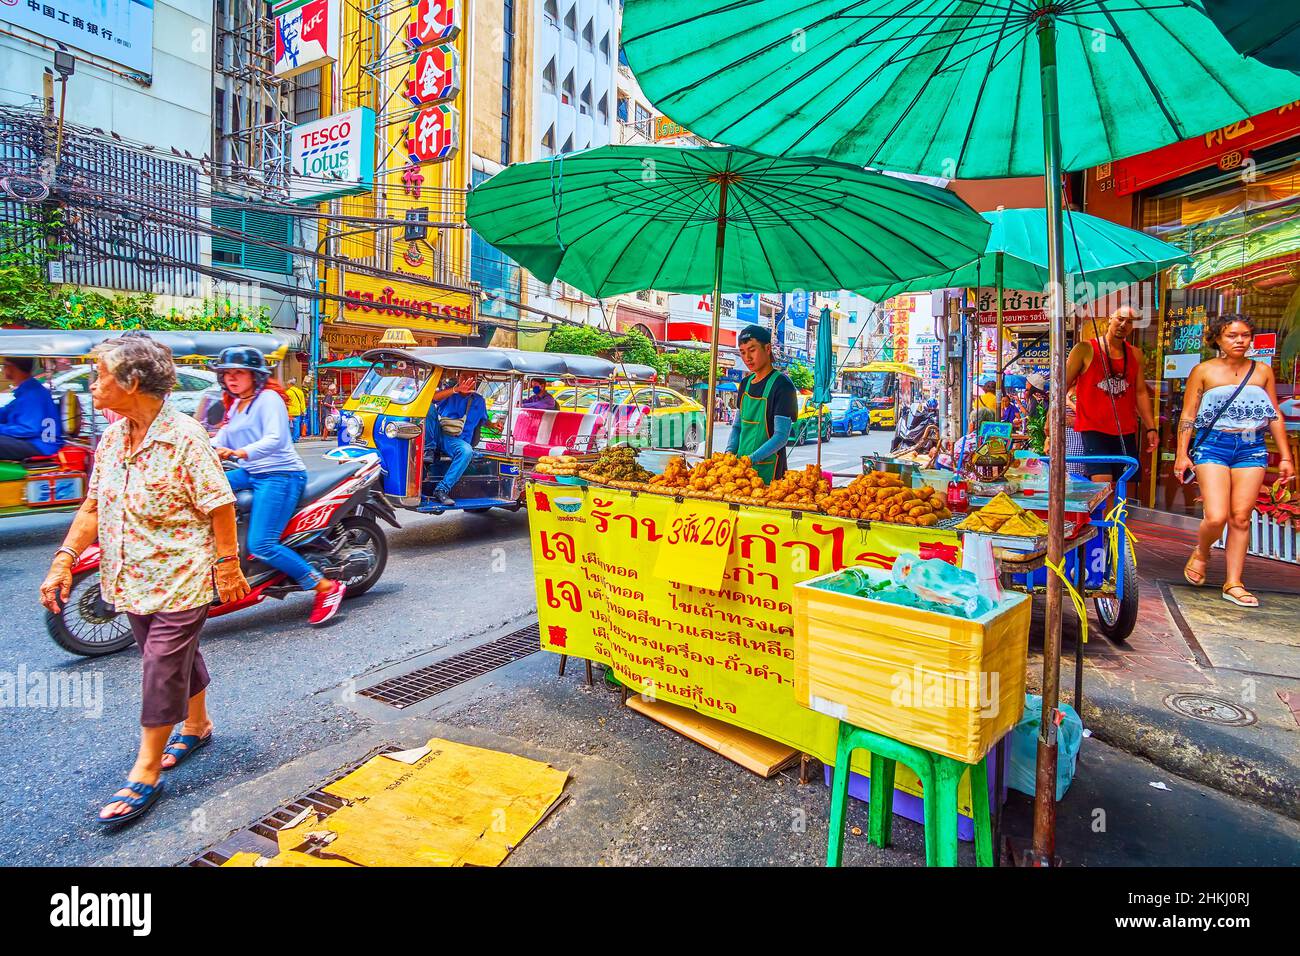 BANGKOK, THAILAND - 12. MAI 2019: Der Straßenstand auf dem Sampheng-Markt in Chinatown mit frittierten Puffs, knusprigen Pfannkuchen, gegrilltem Fleisch, am 12. Mai i Stockfoto